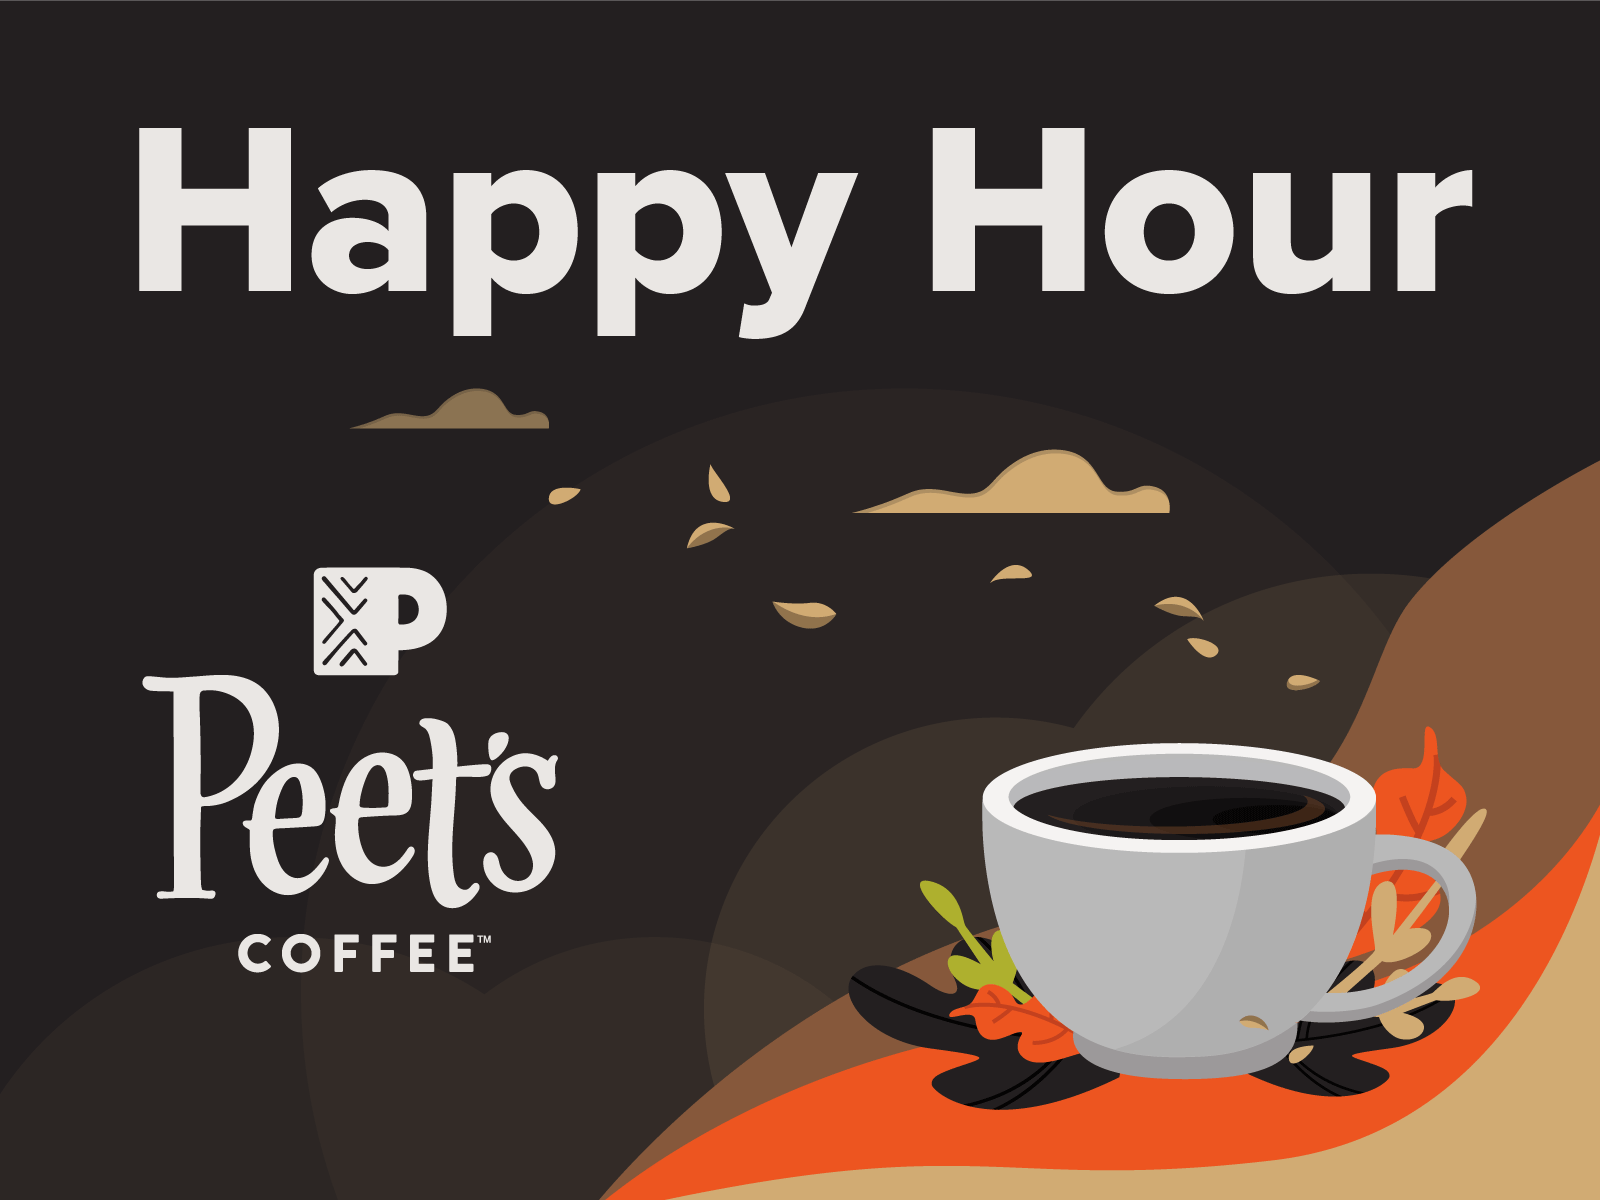 Peet's Coffee Happy Hour